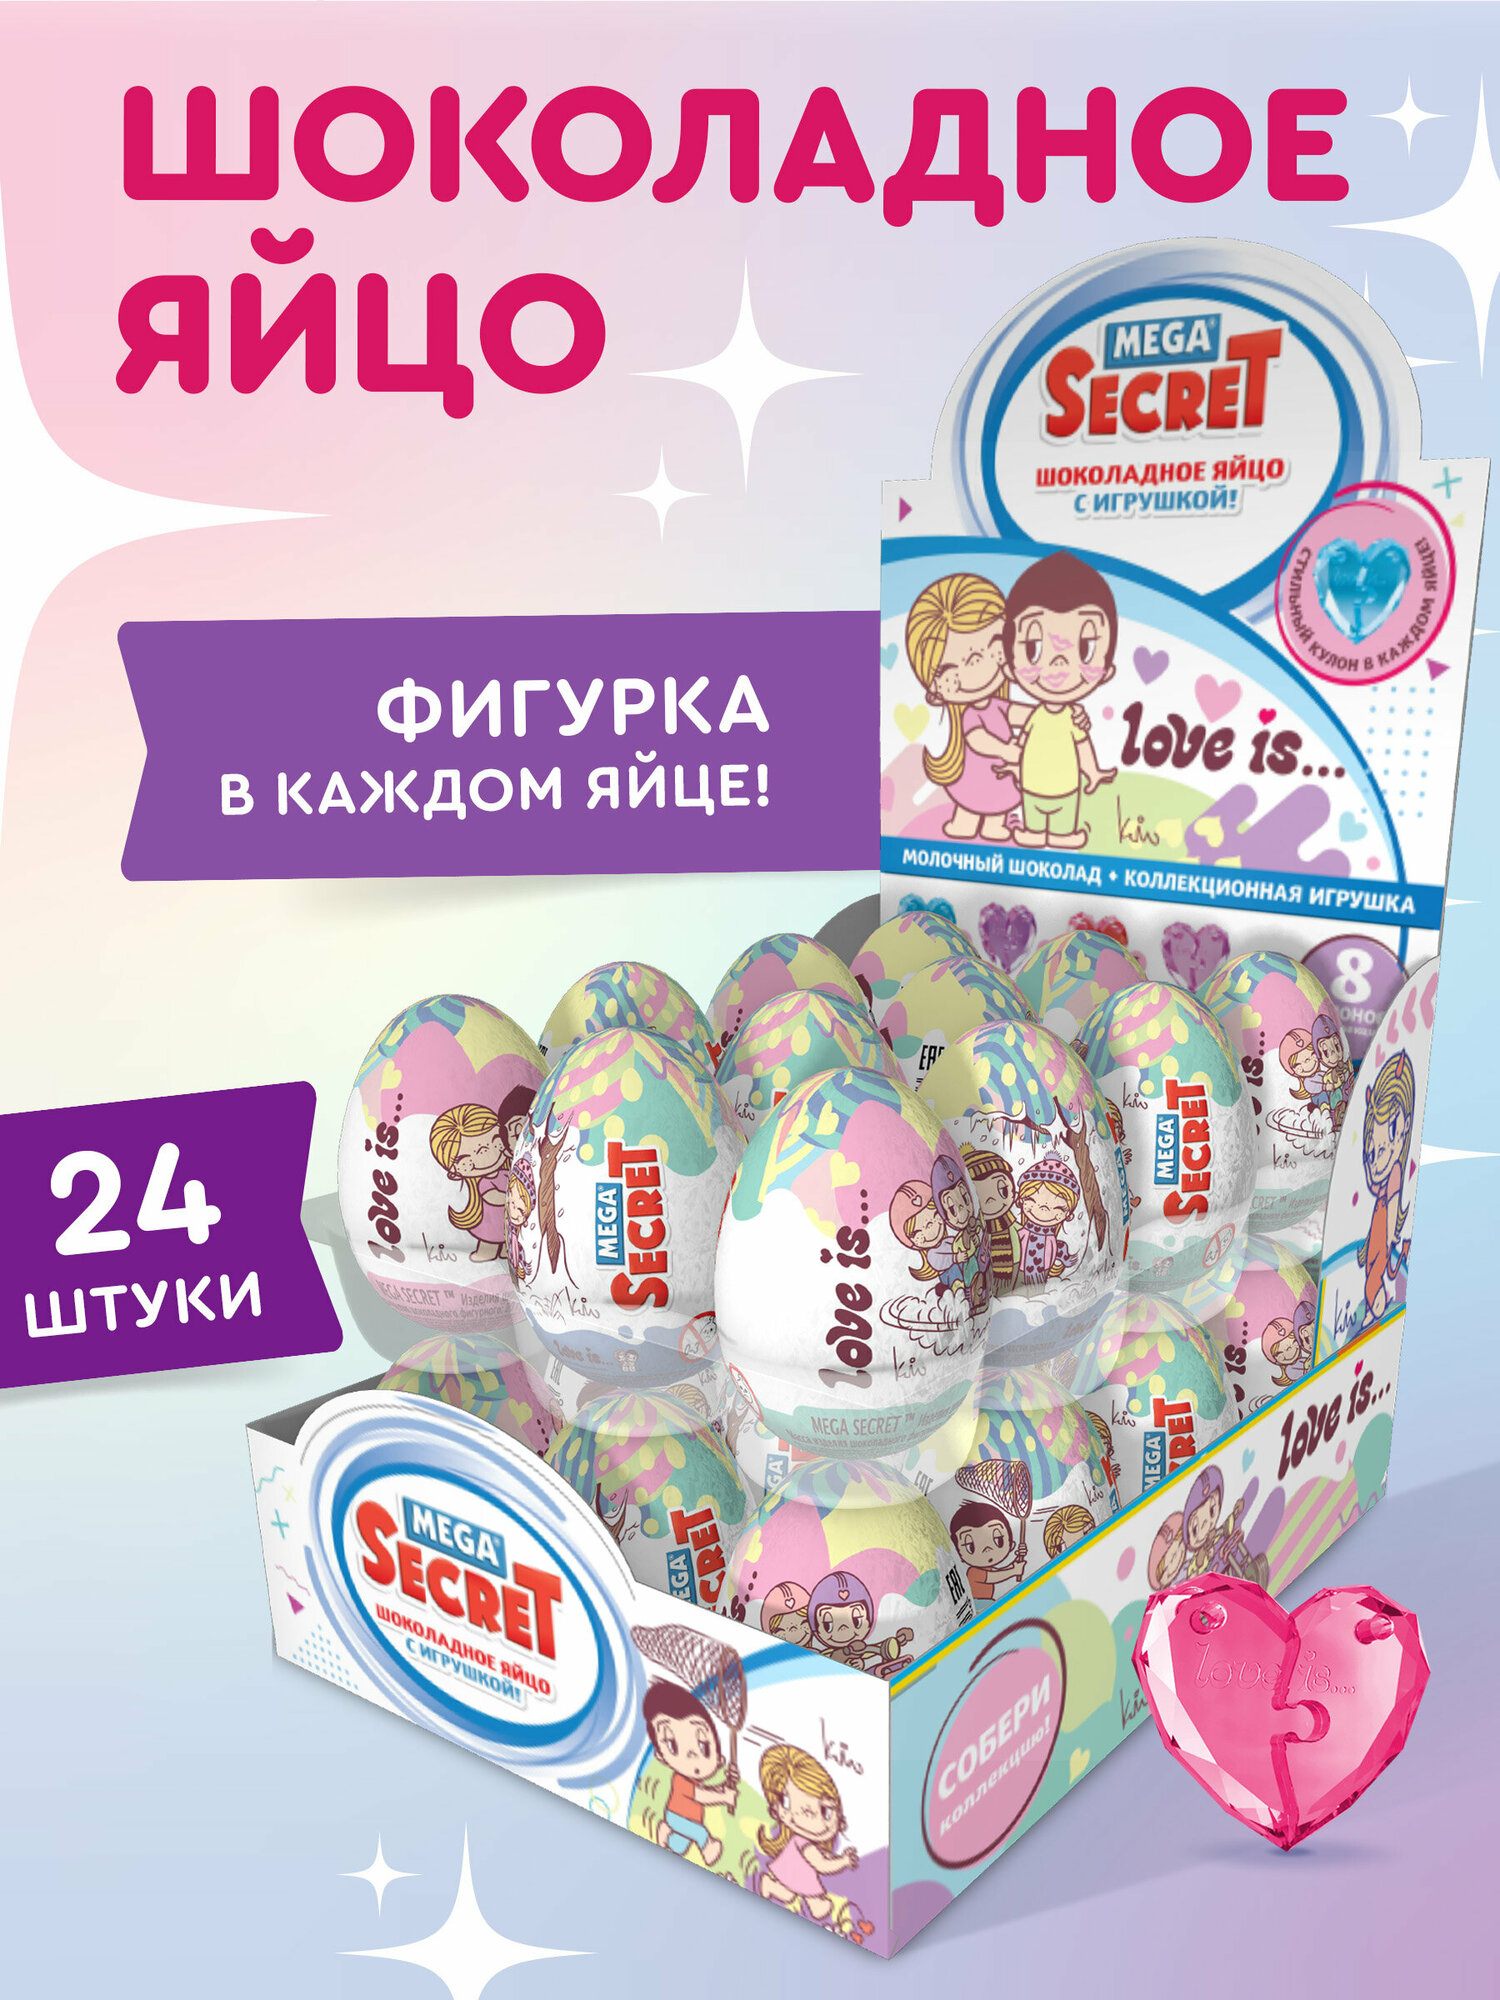 MEGA SECRET Шоколадное яйцо LOVE IS с коллекционной игрушкой, 24 шт. х 20 г